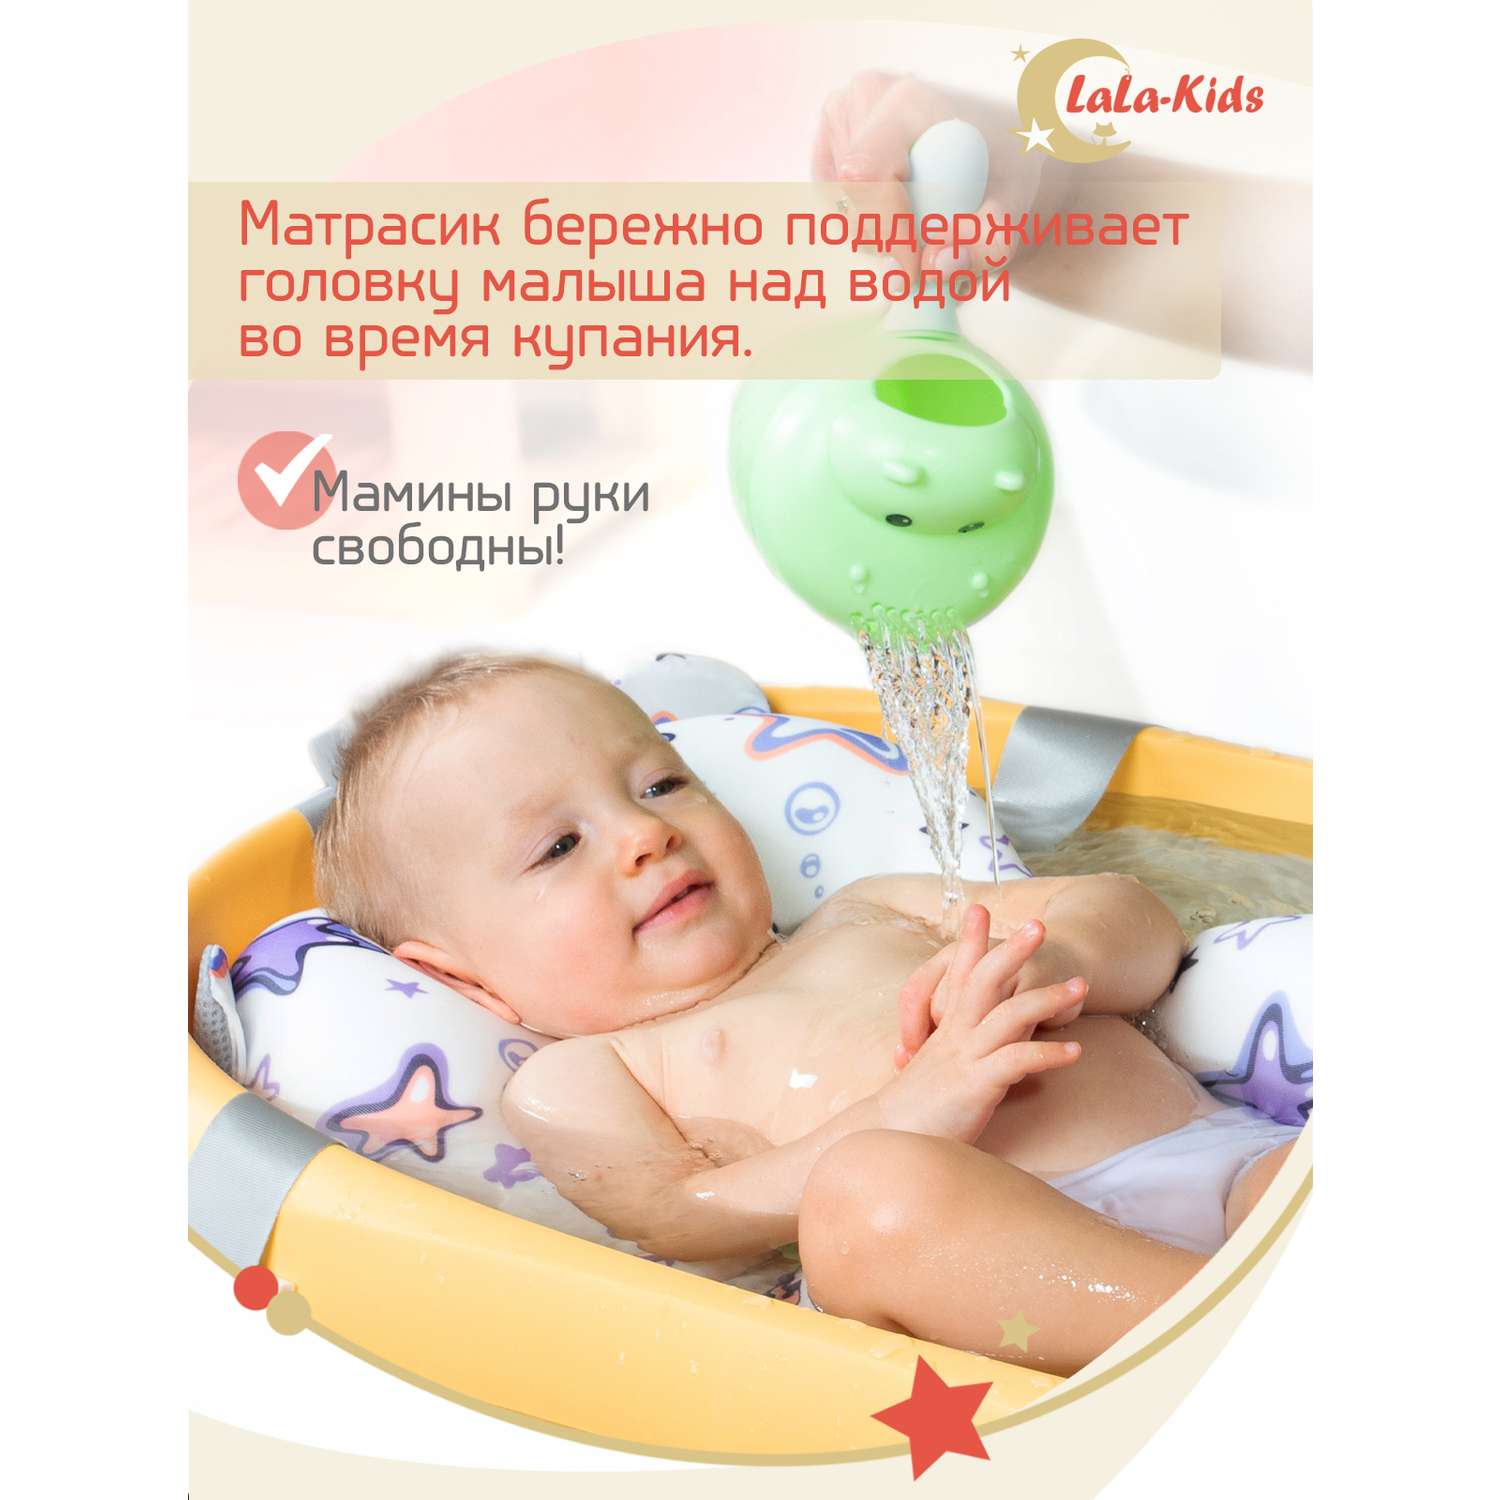 Складная ванночка LaLa-Kids для купания новорожденных с матрасиком в комплекте - фото 10